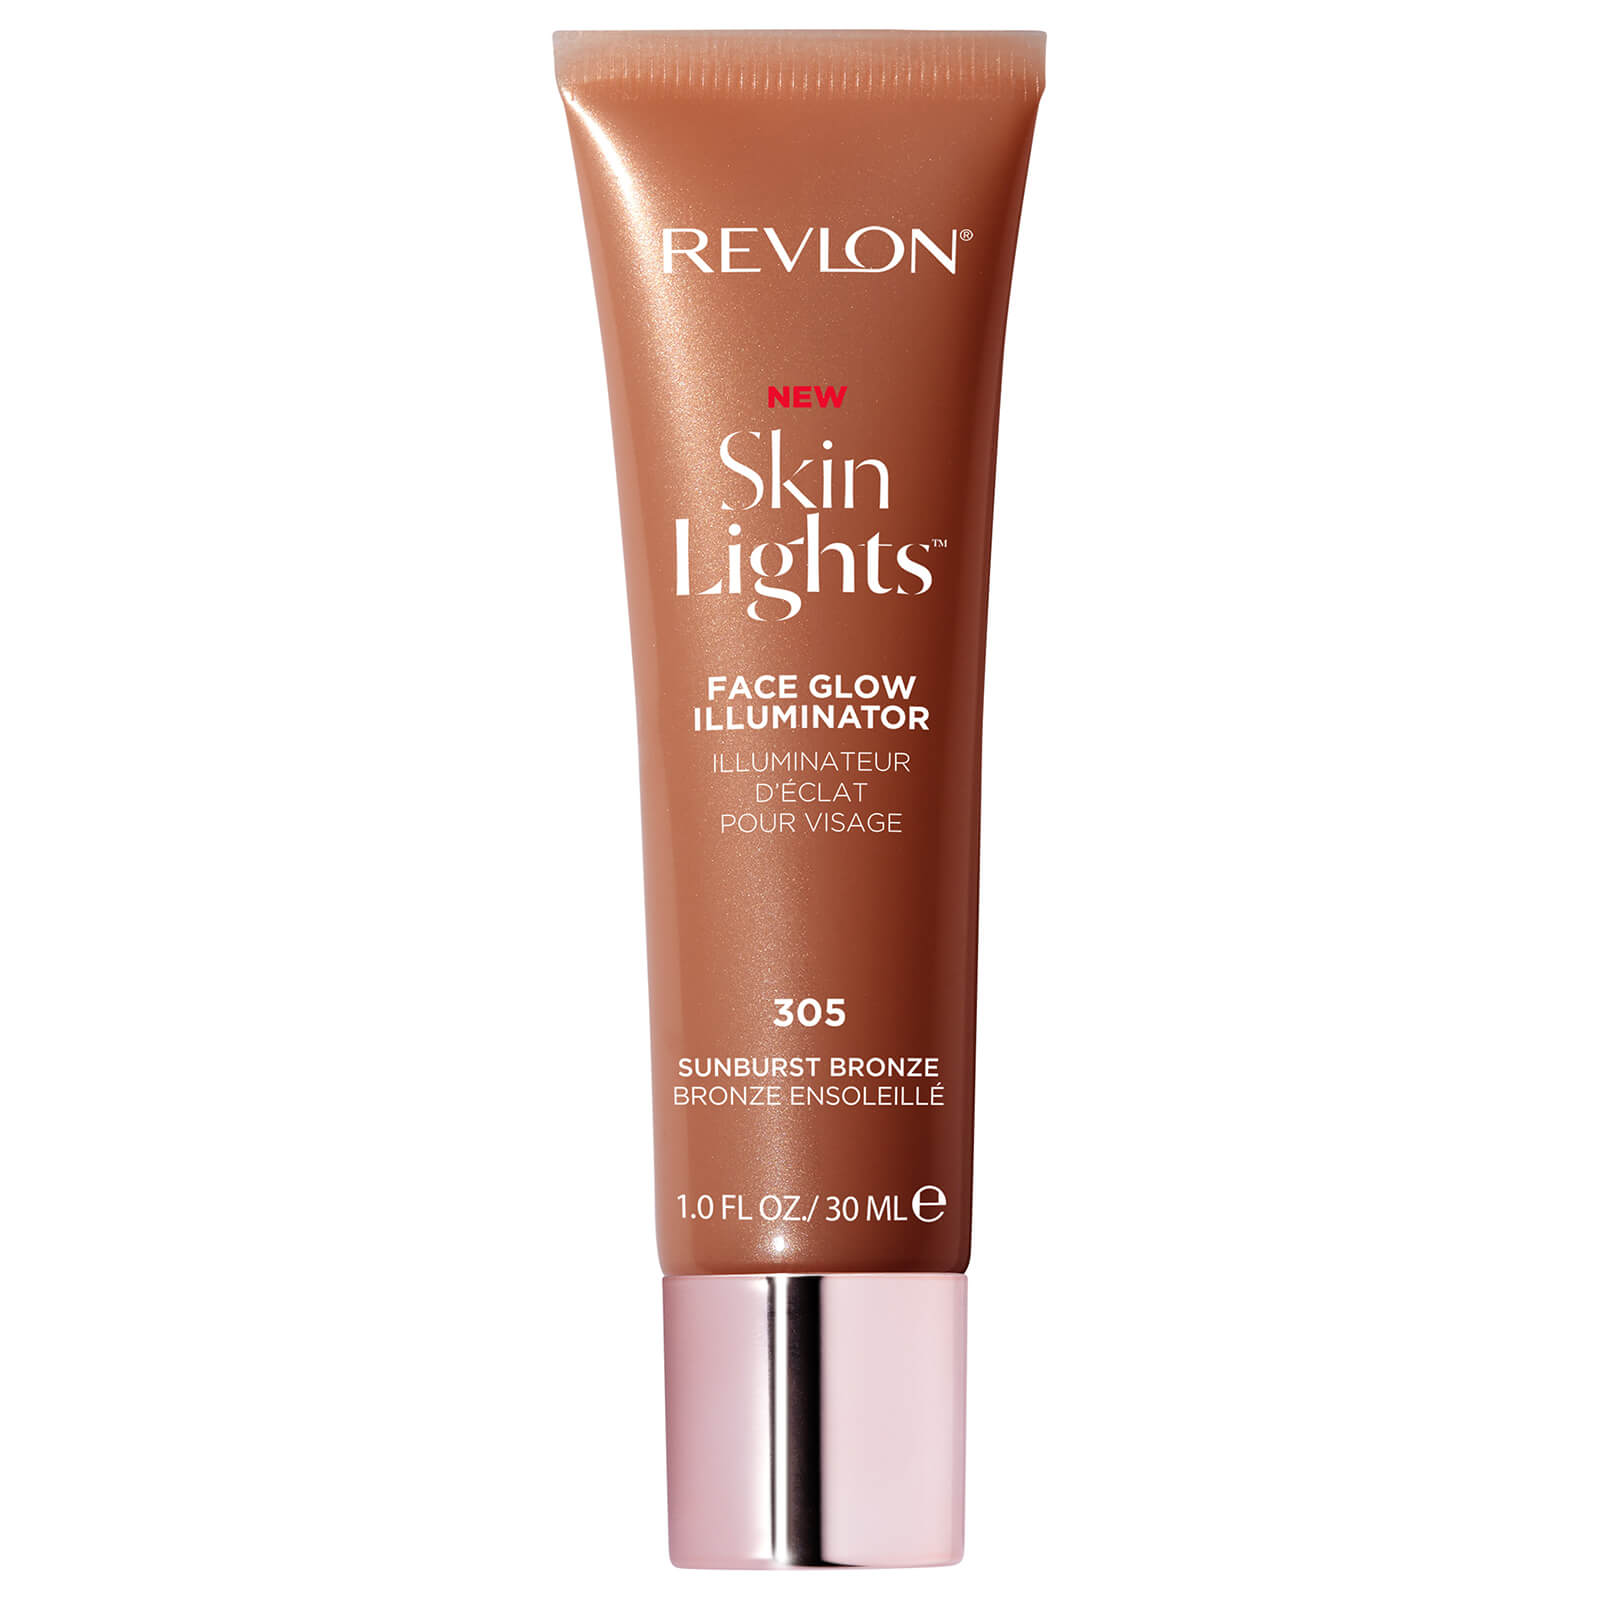 Revlon SkinLights Face Glow Illuminator (Various Shades) - Sunburst Bronze ...